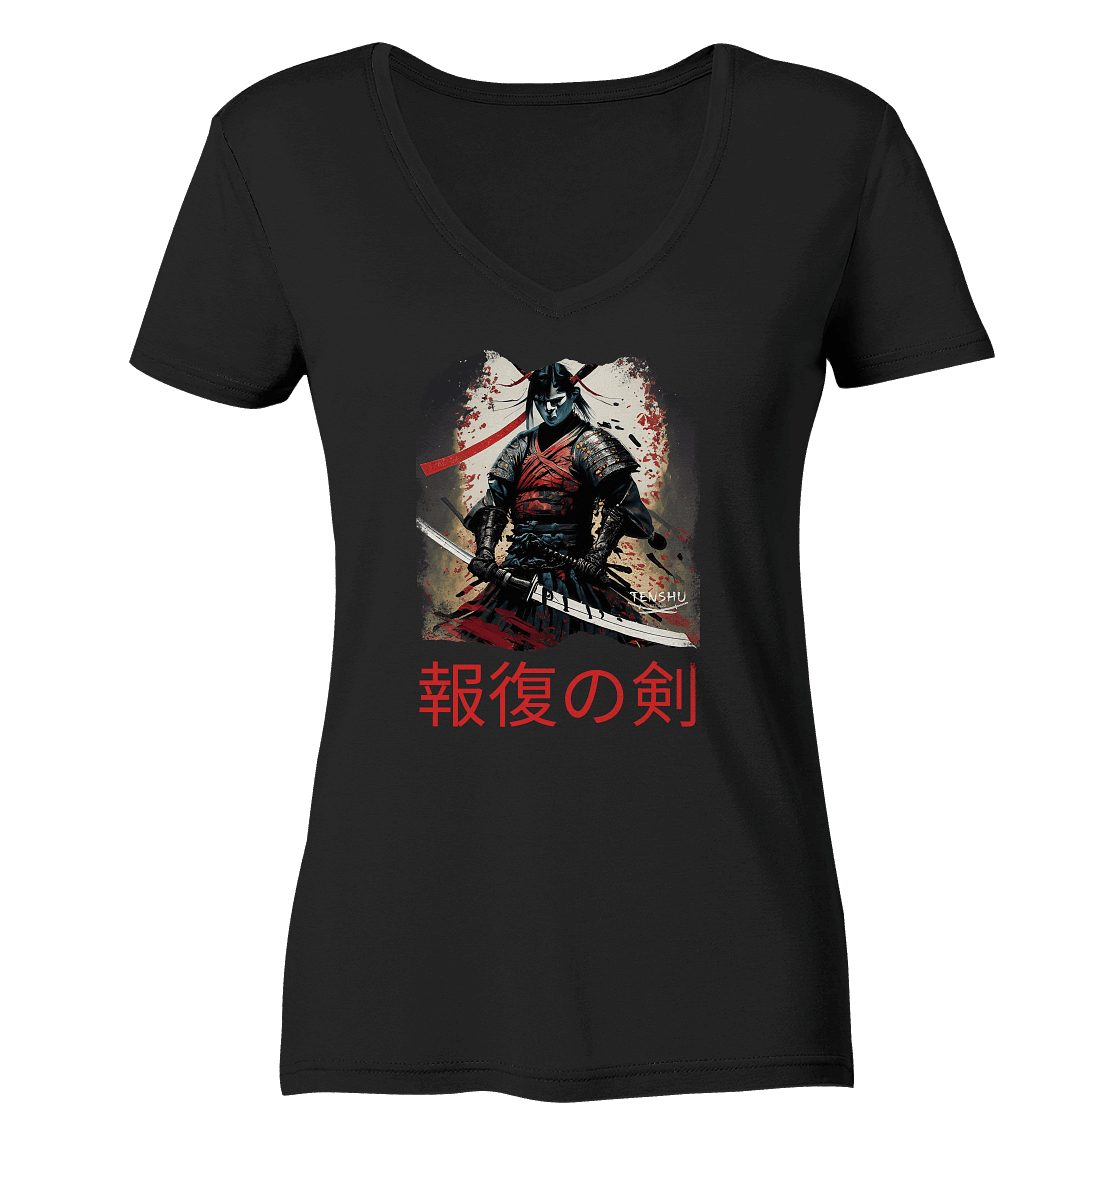 Tenshu / Das Schwert der Vergeltung - Ladies Organic V-Neck Shirt